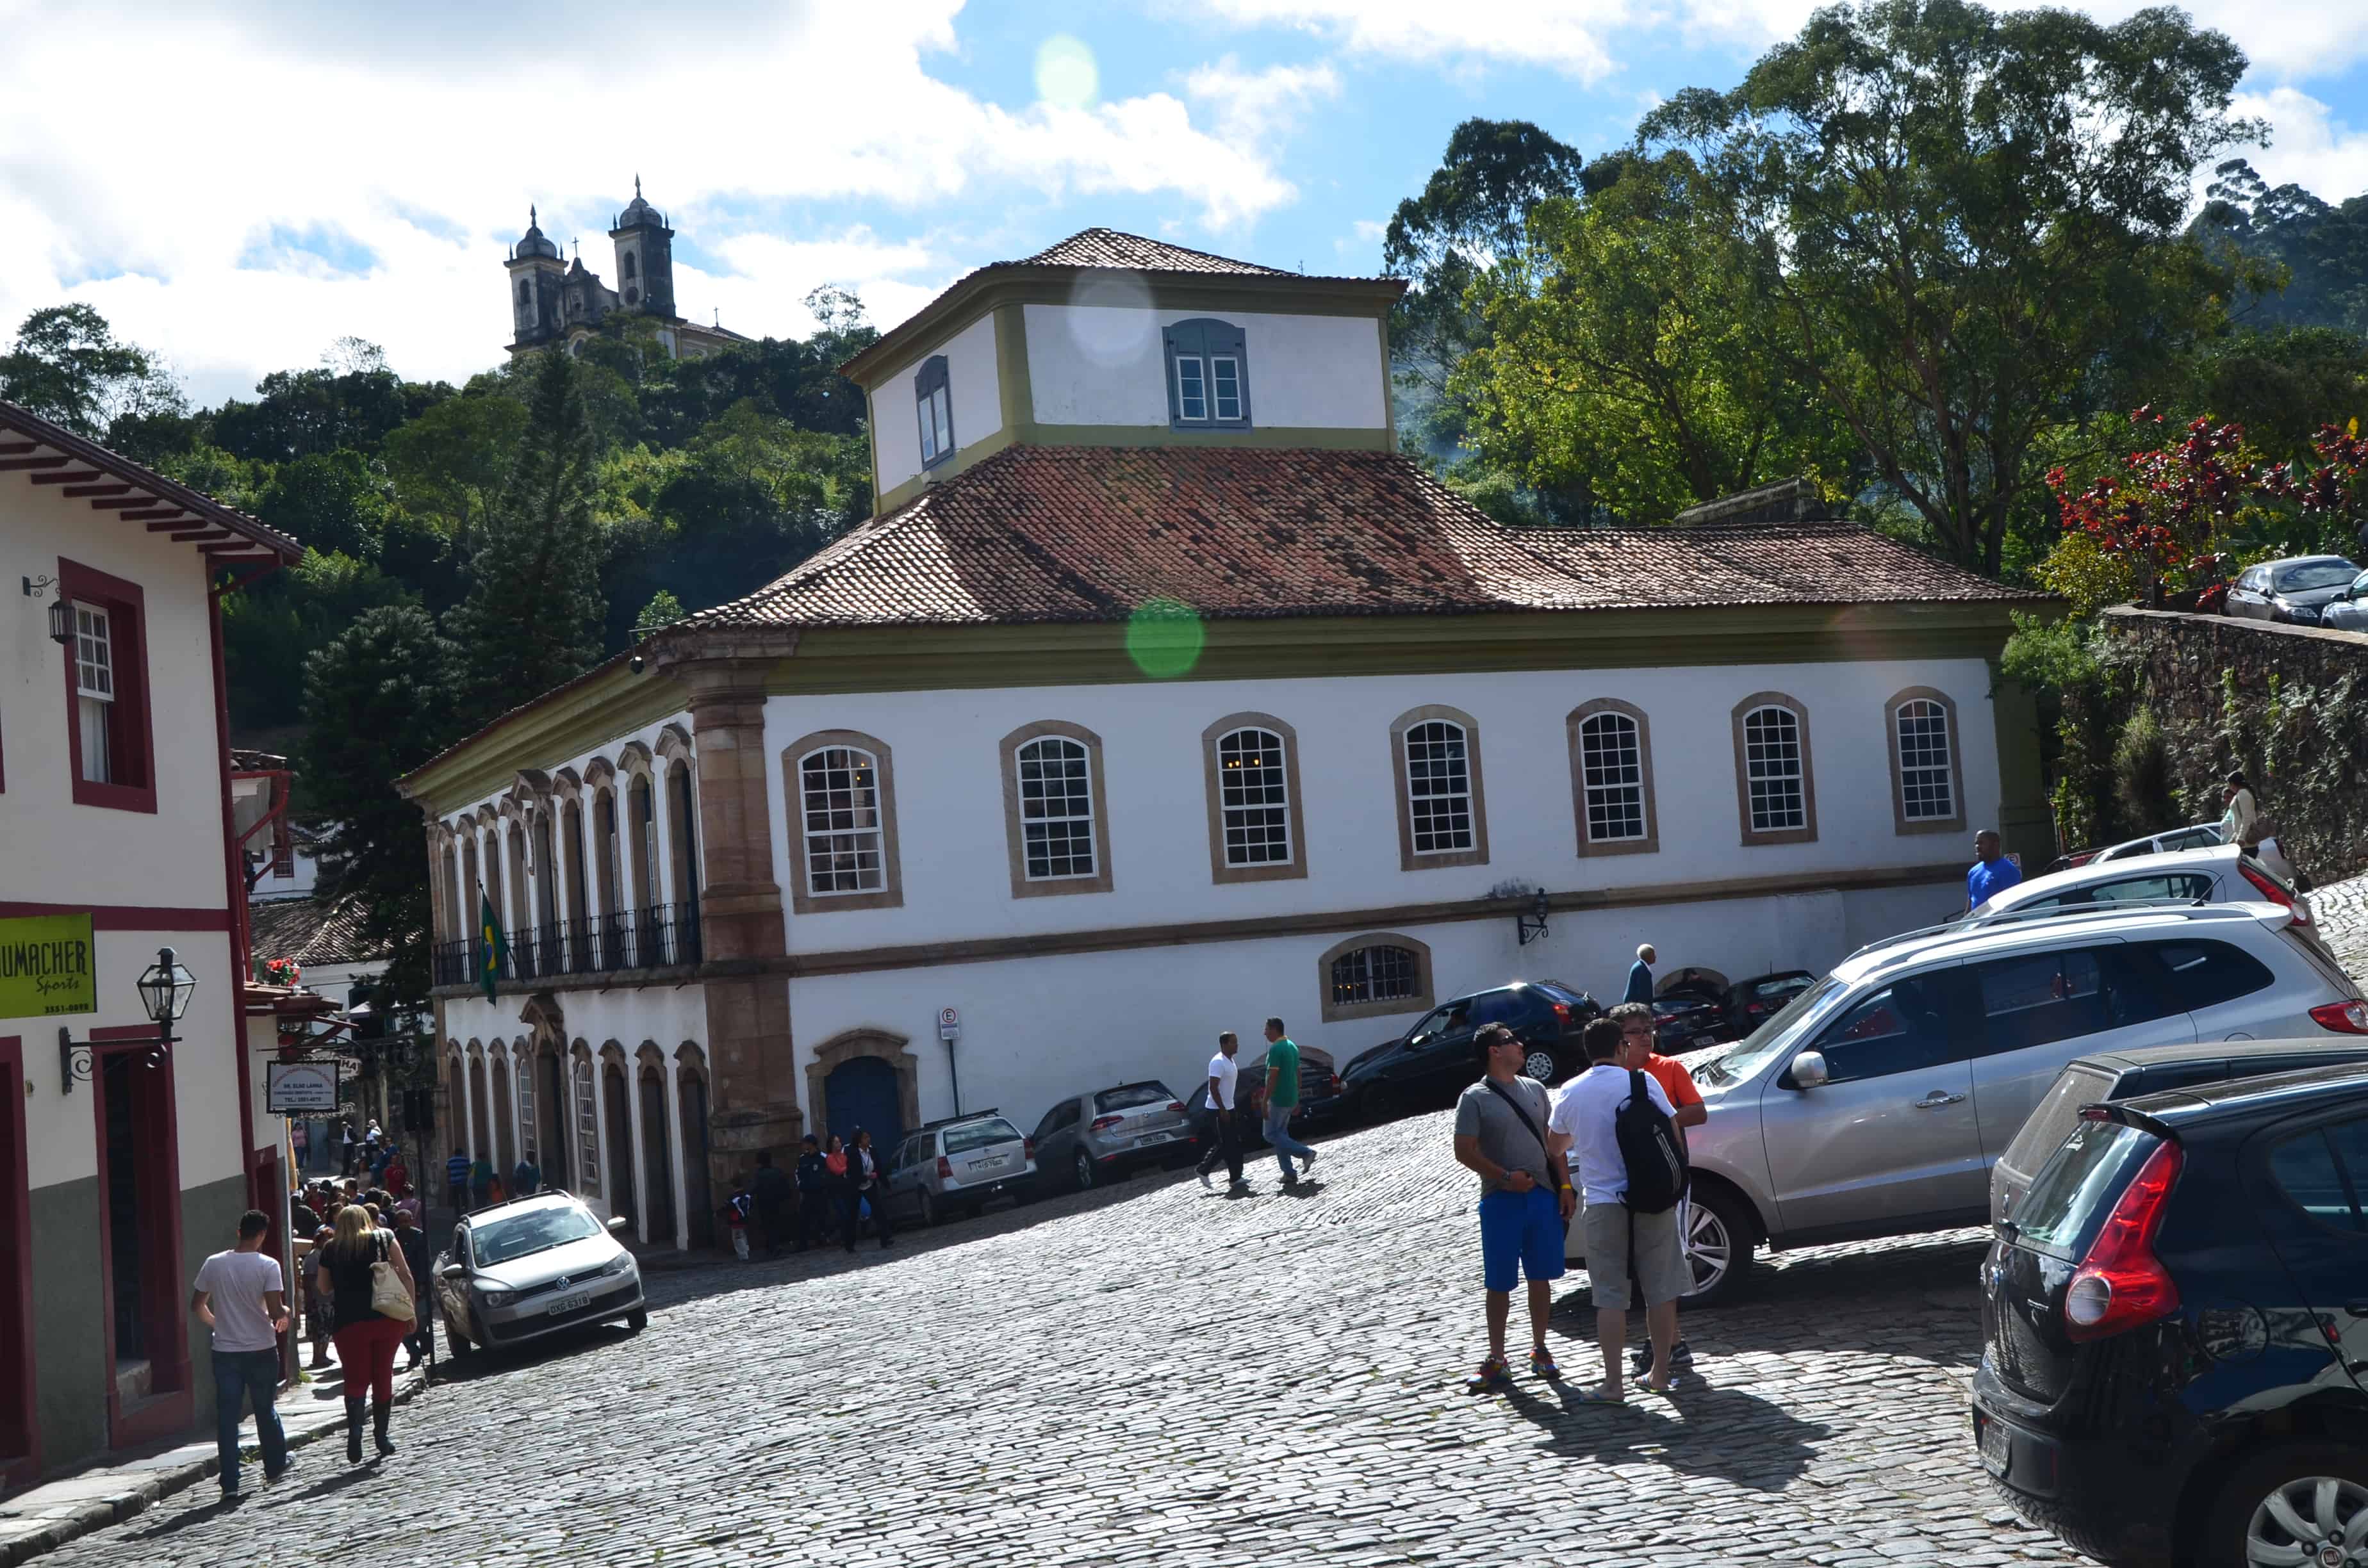 Casa dos Contos in Ouro Preto, Brazil